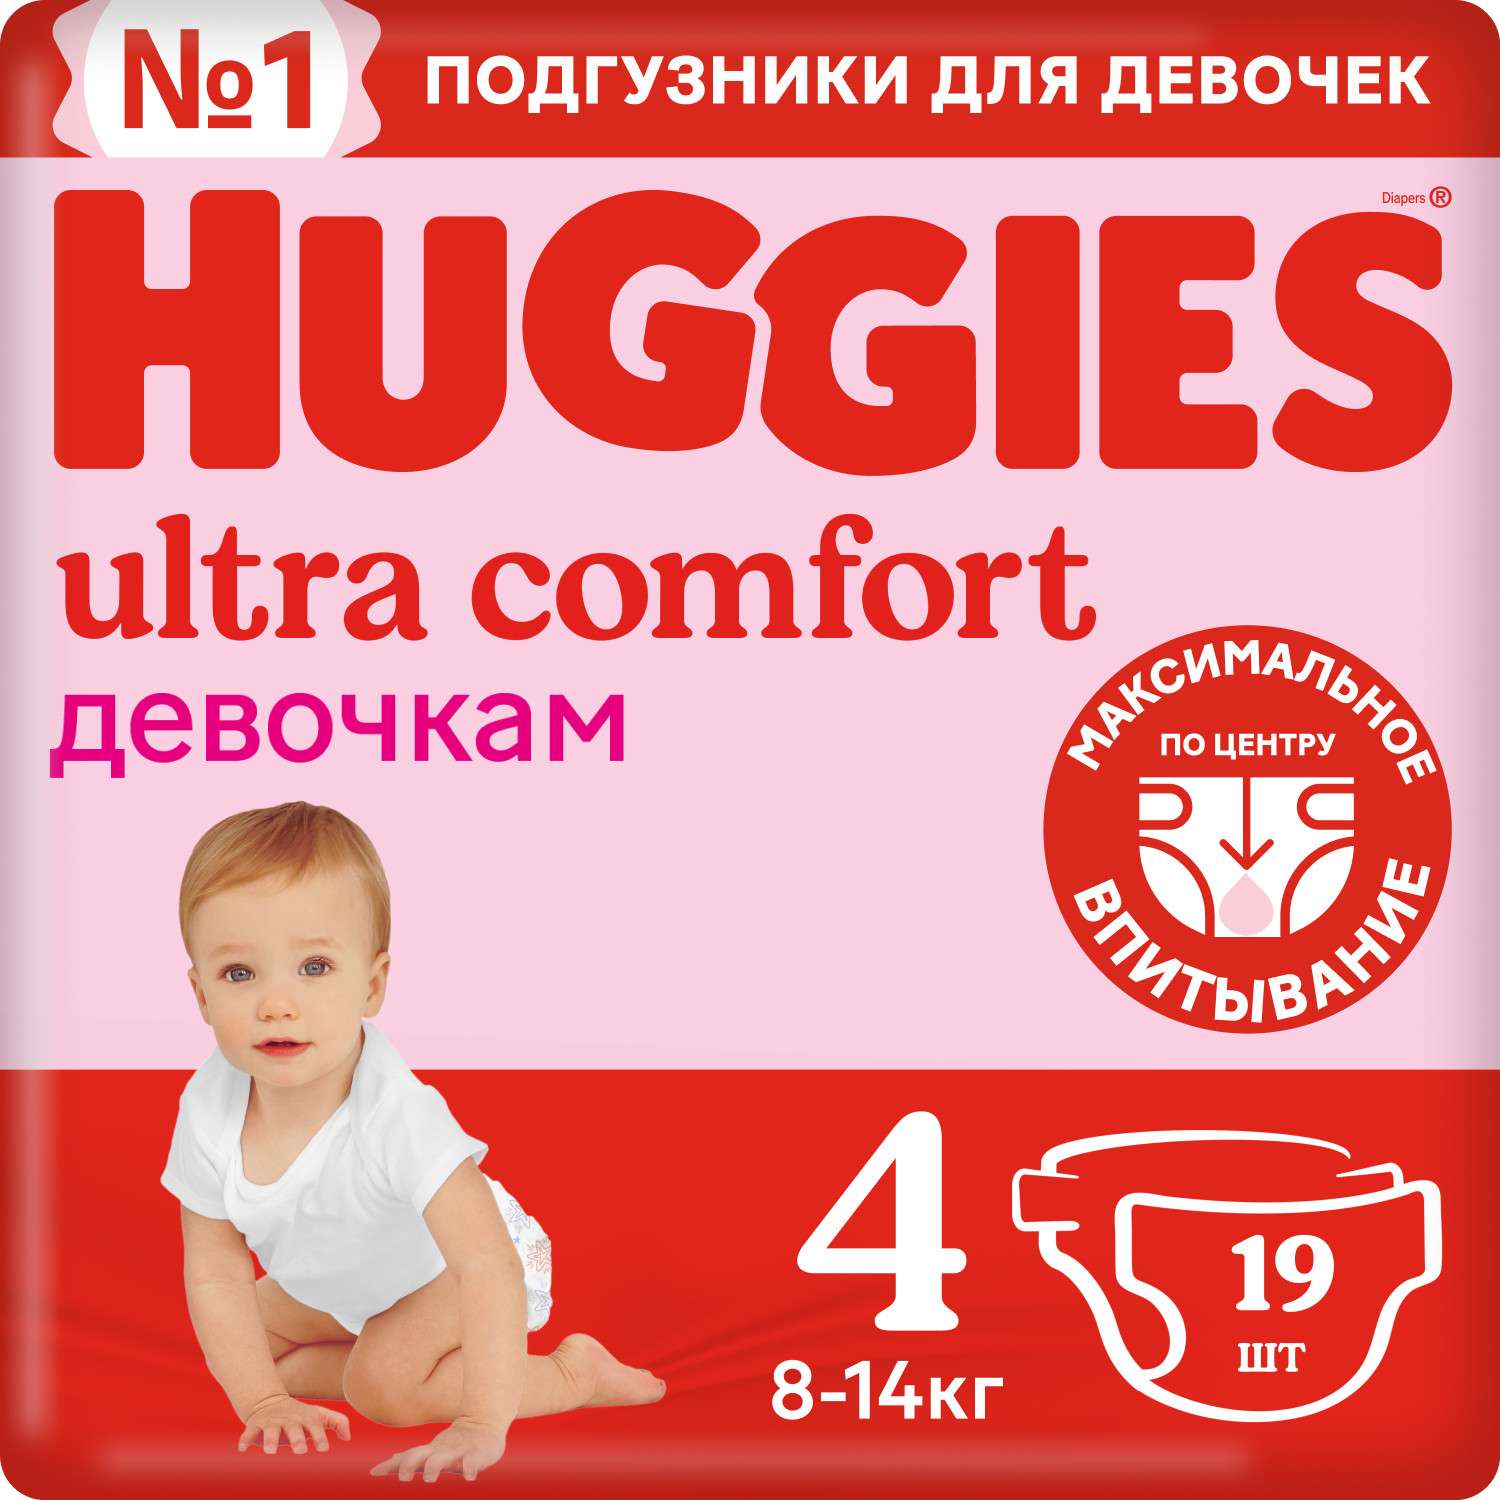 Подгузники для девочек Huggies Ultra Comfort 4 8-14кг 19шт - фото 2